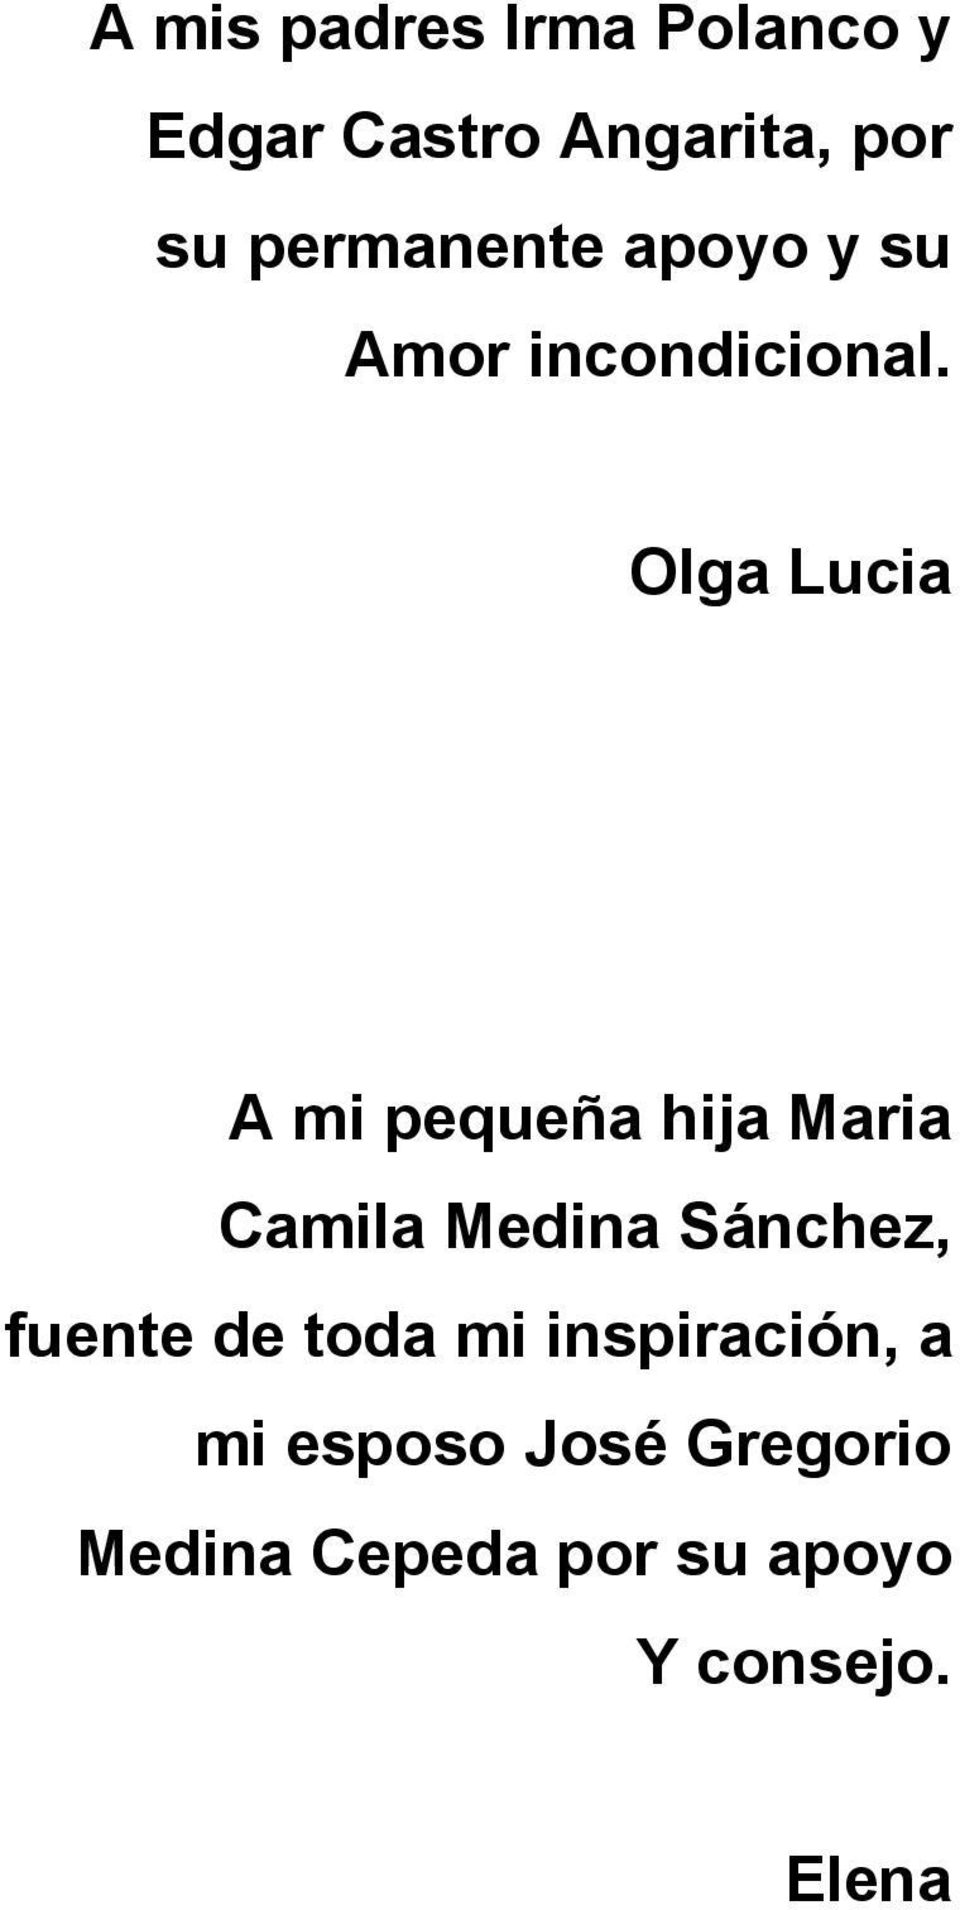 Olga Lucia A mi pequeña hija Maria Camila Medina Sánchez, fuente